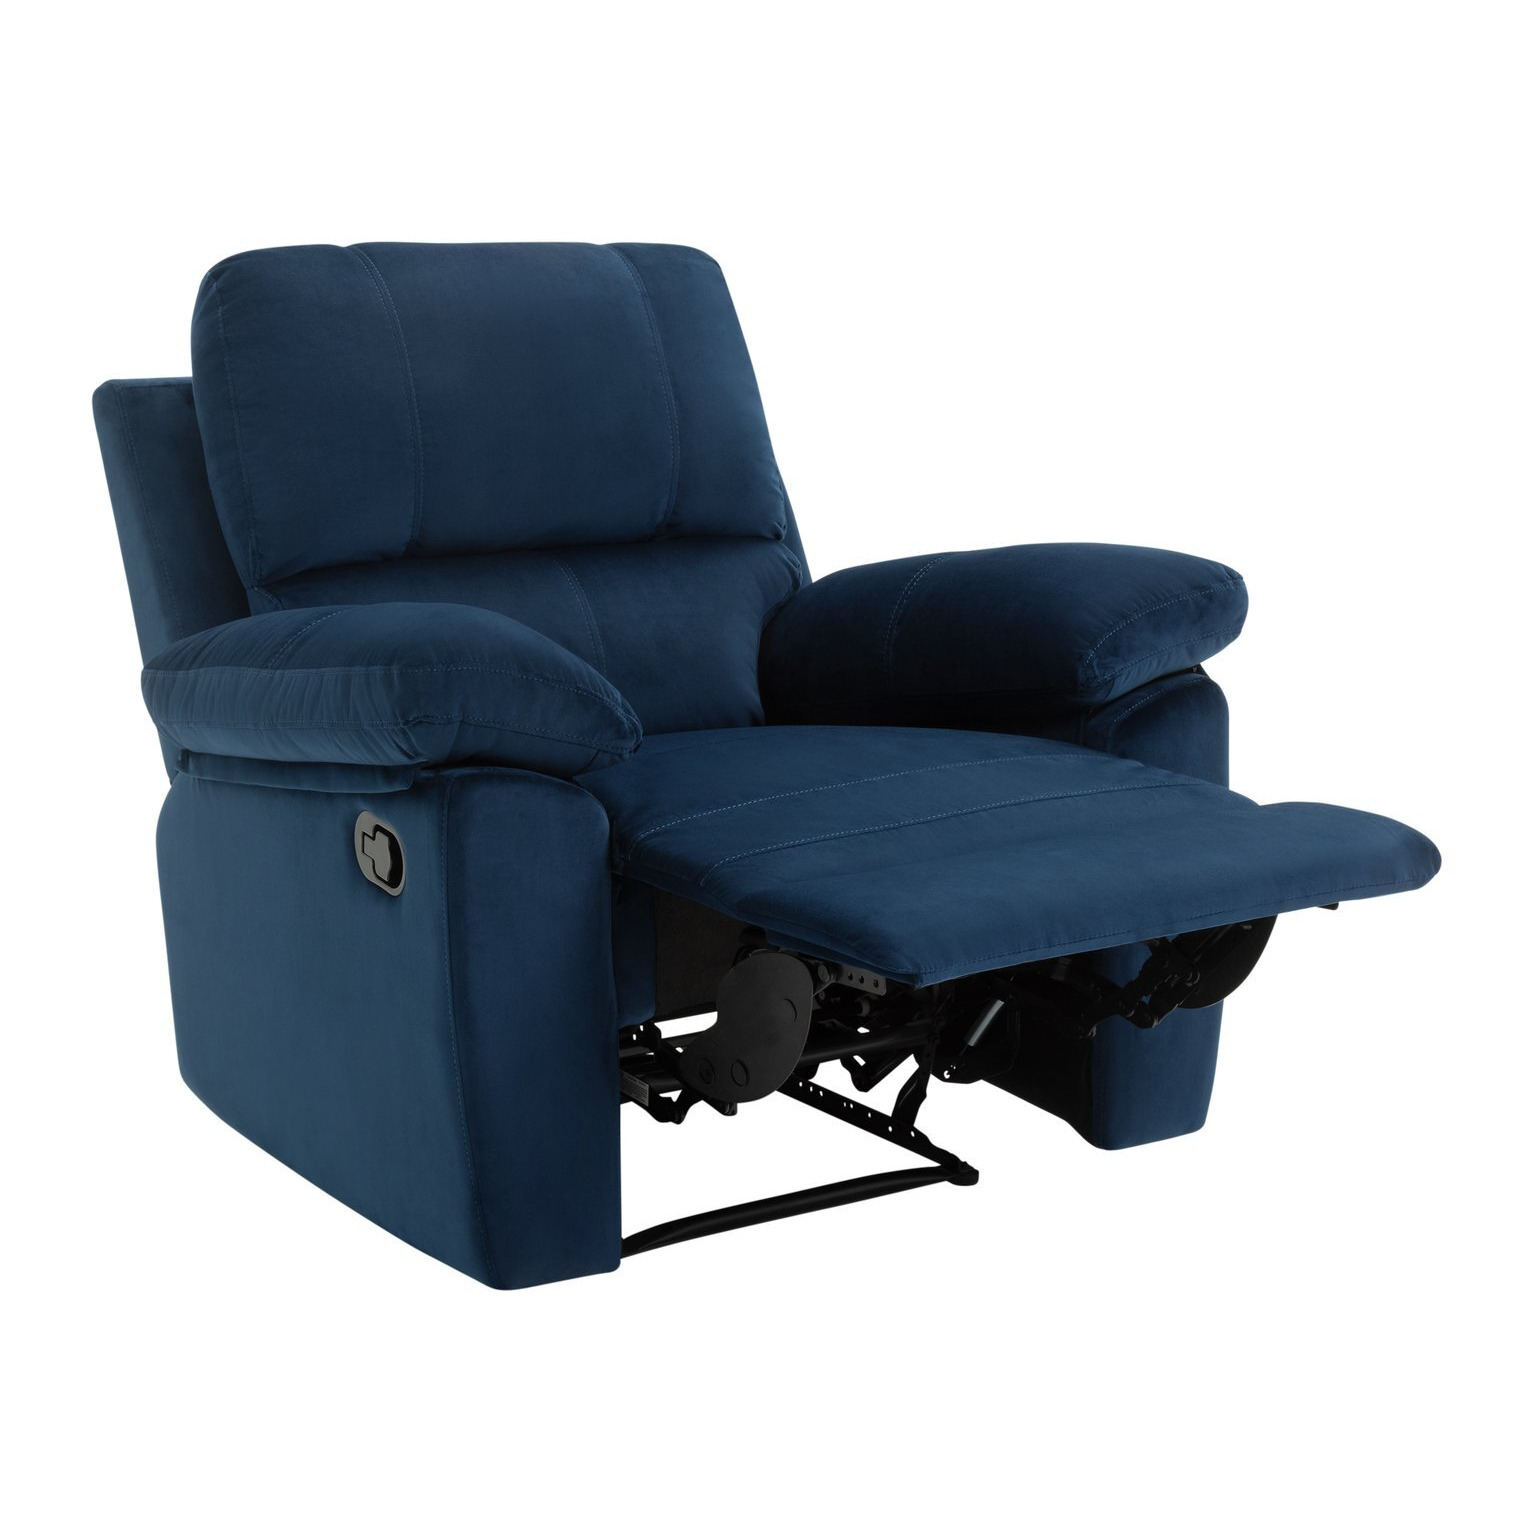 Toby Velvet Manual Recliner Chair - Navy - image 1